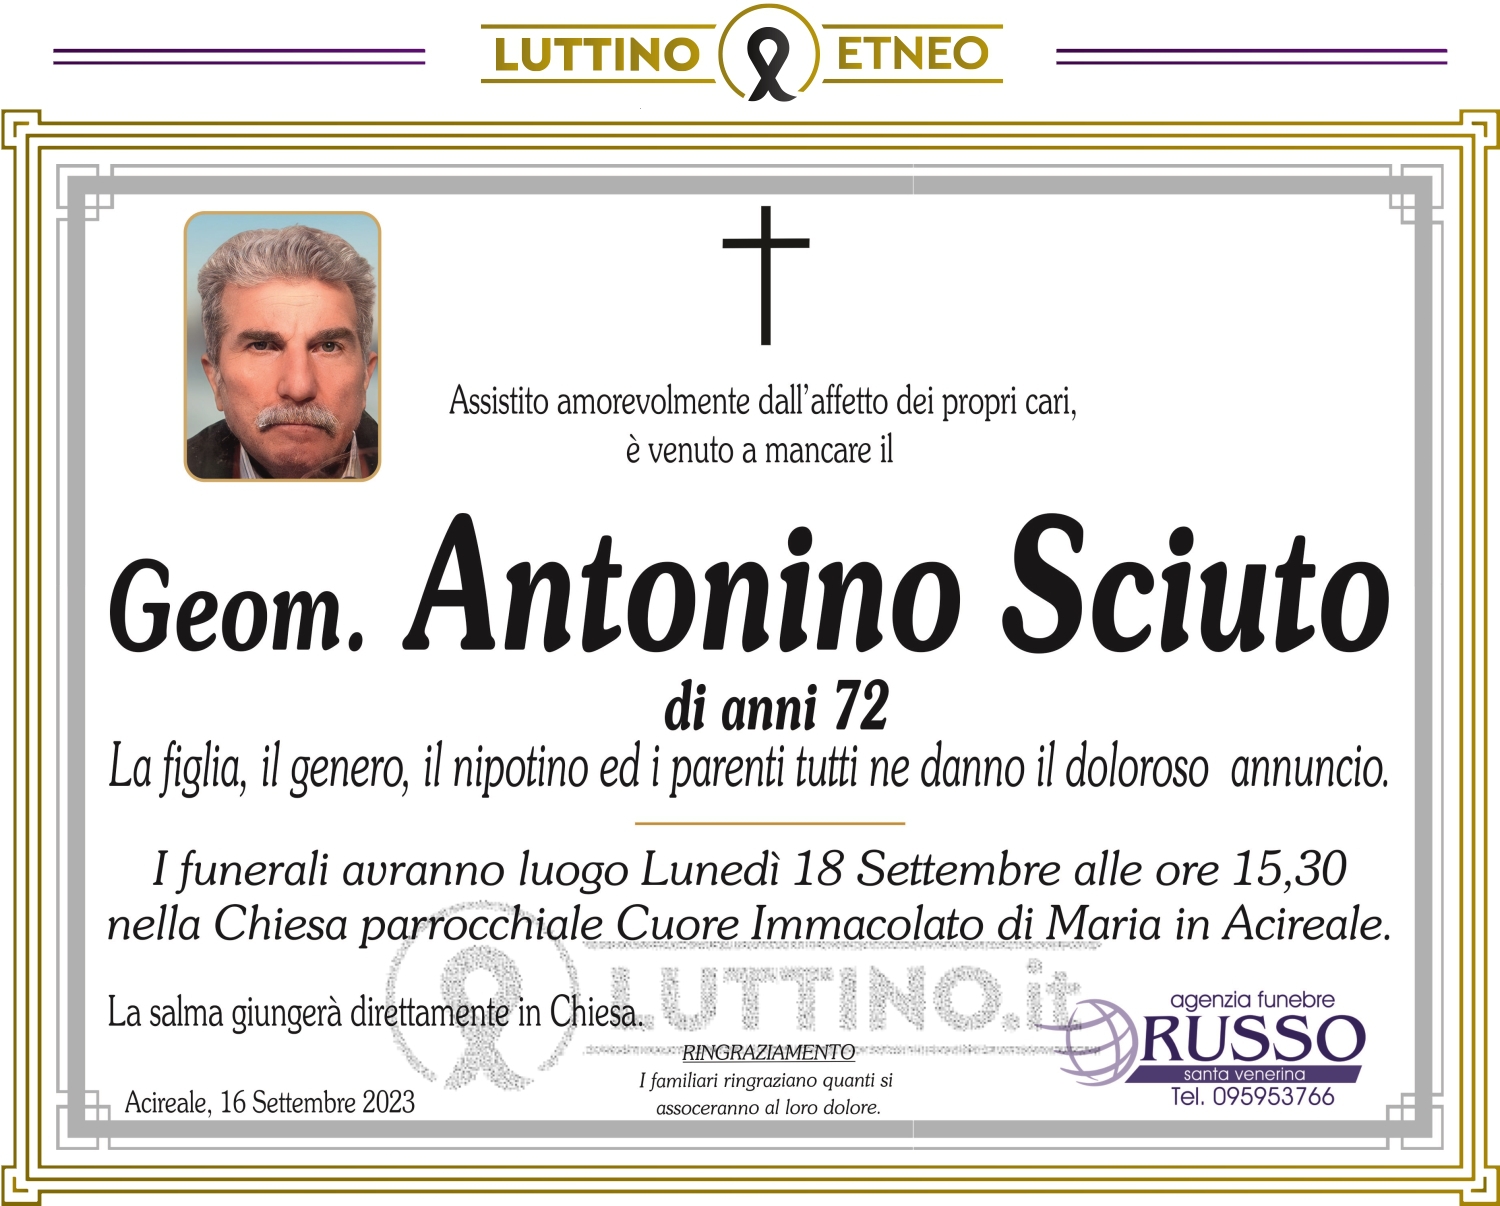 Antonino Sciuto